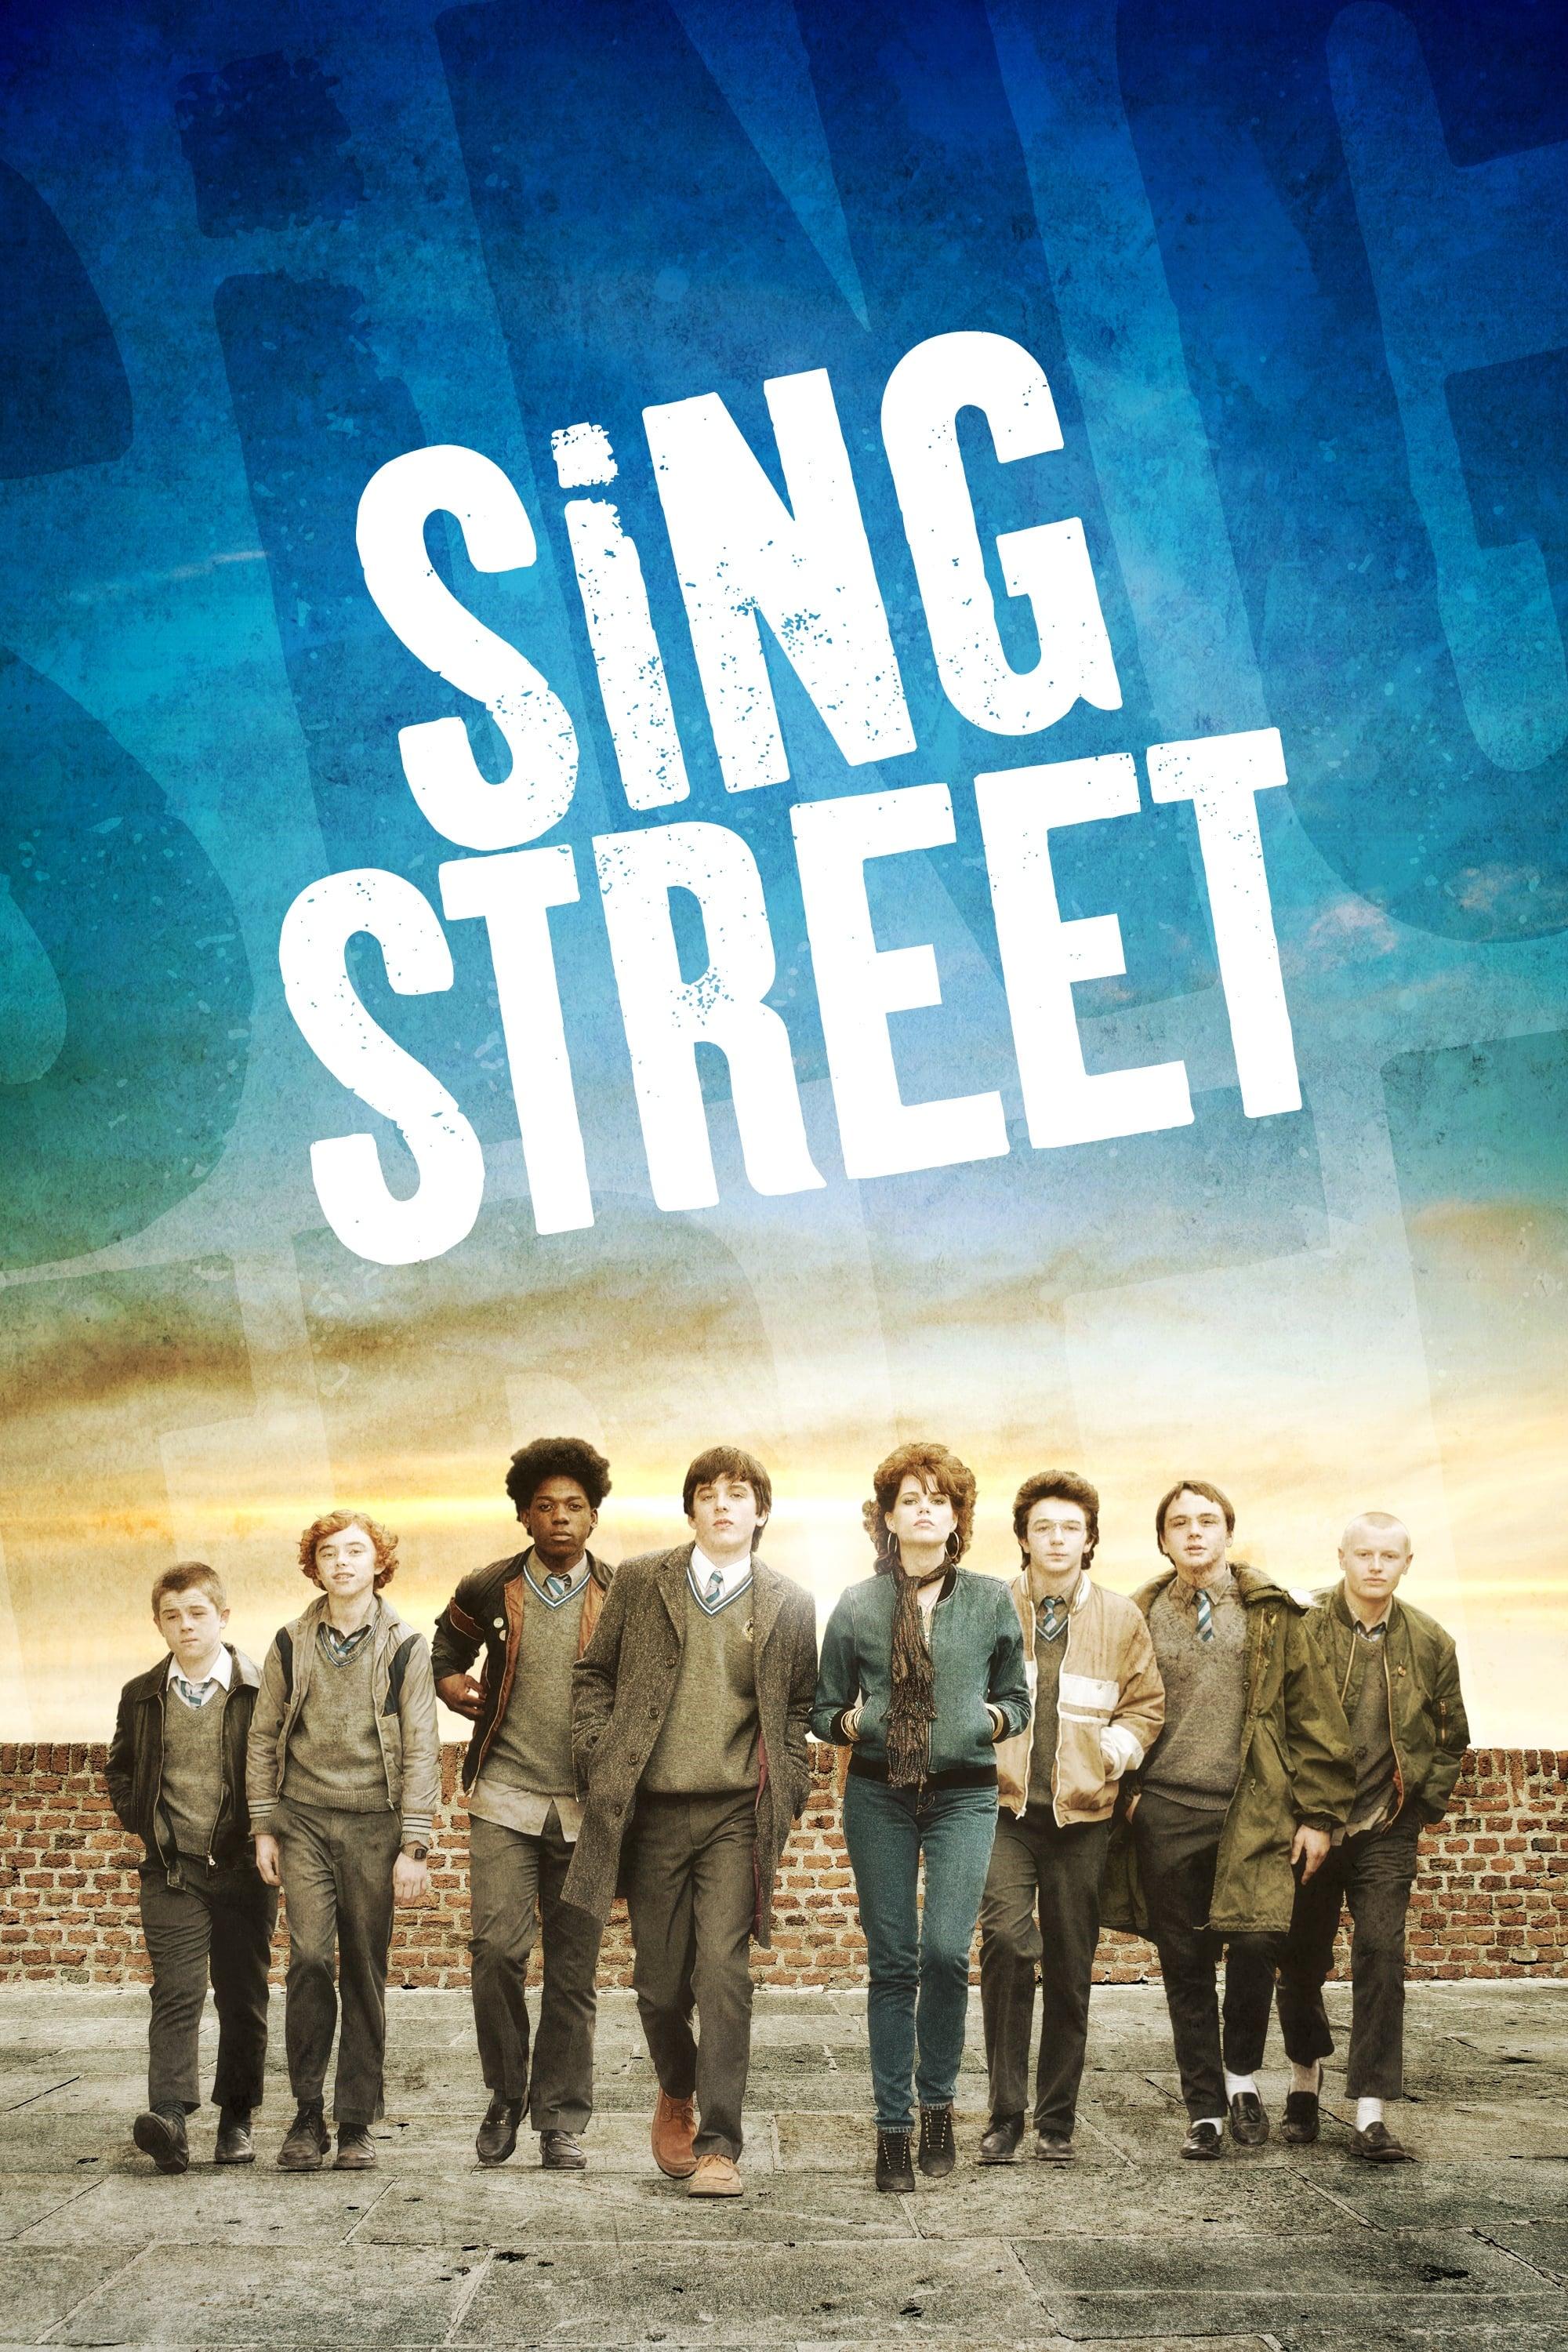 Sing Street poster